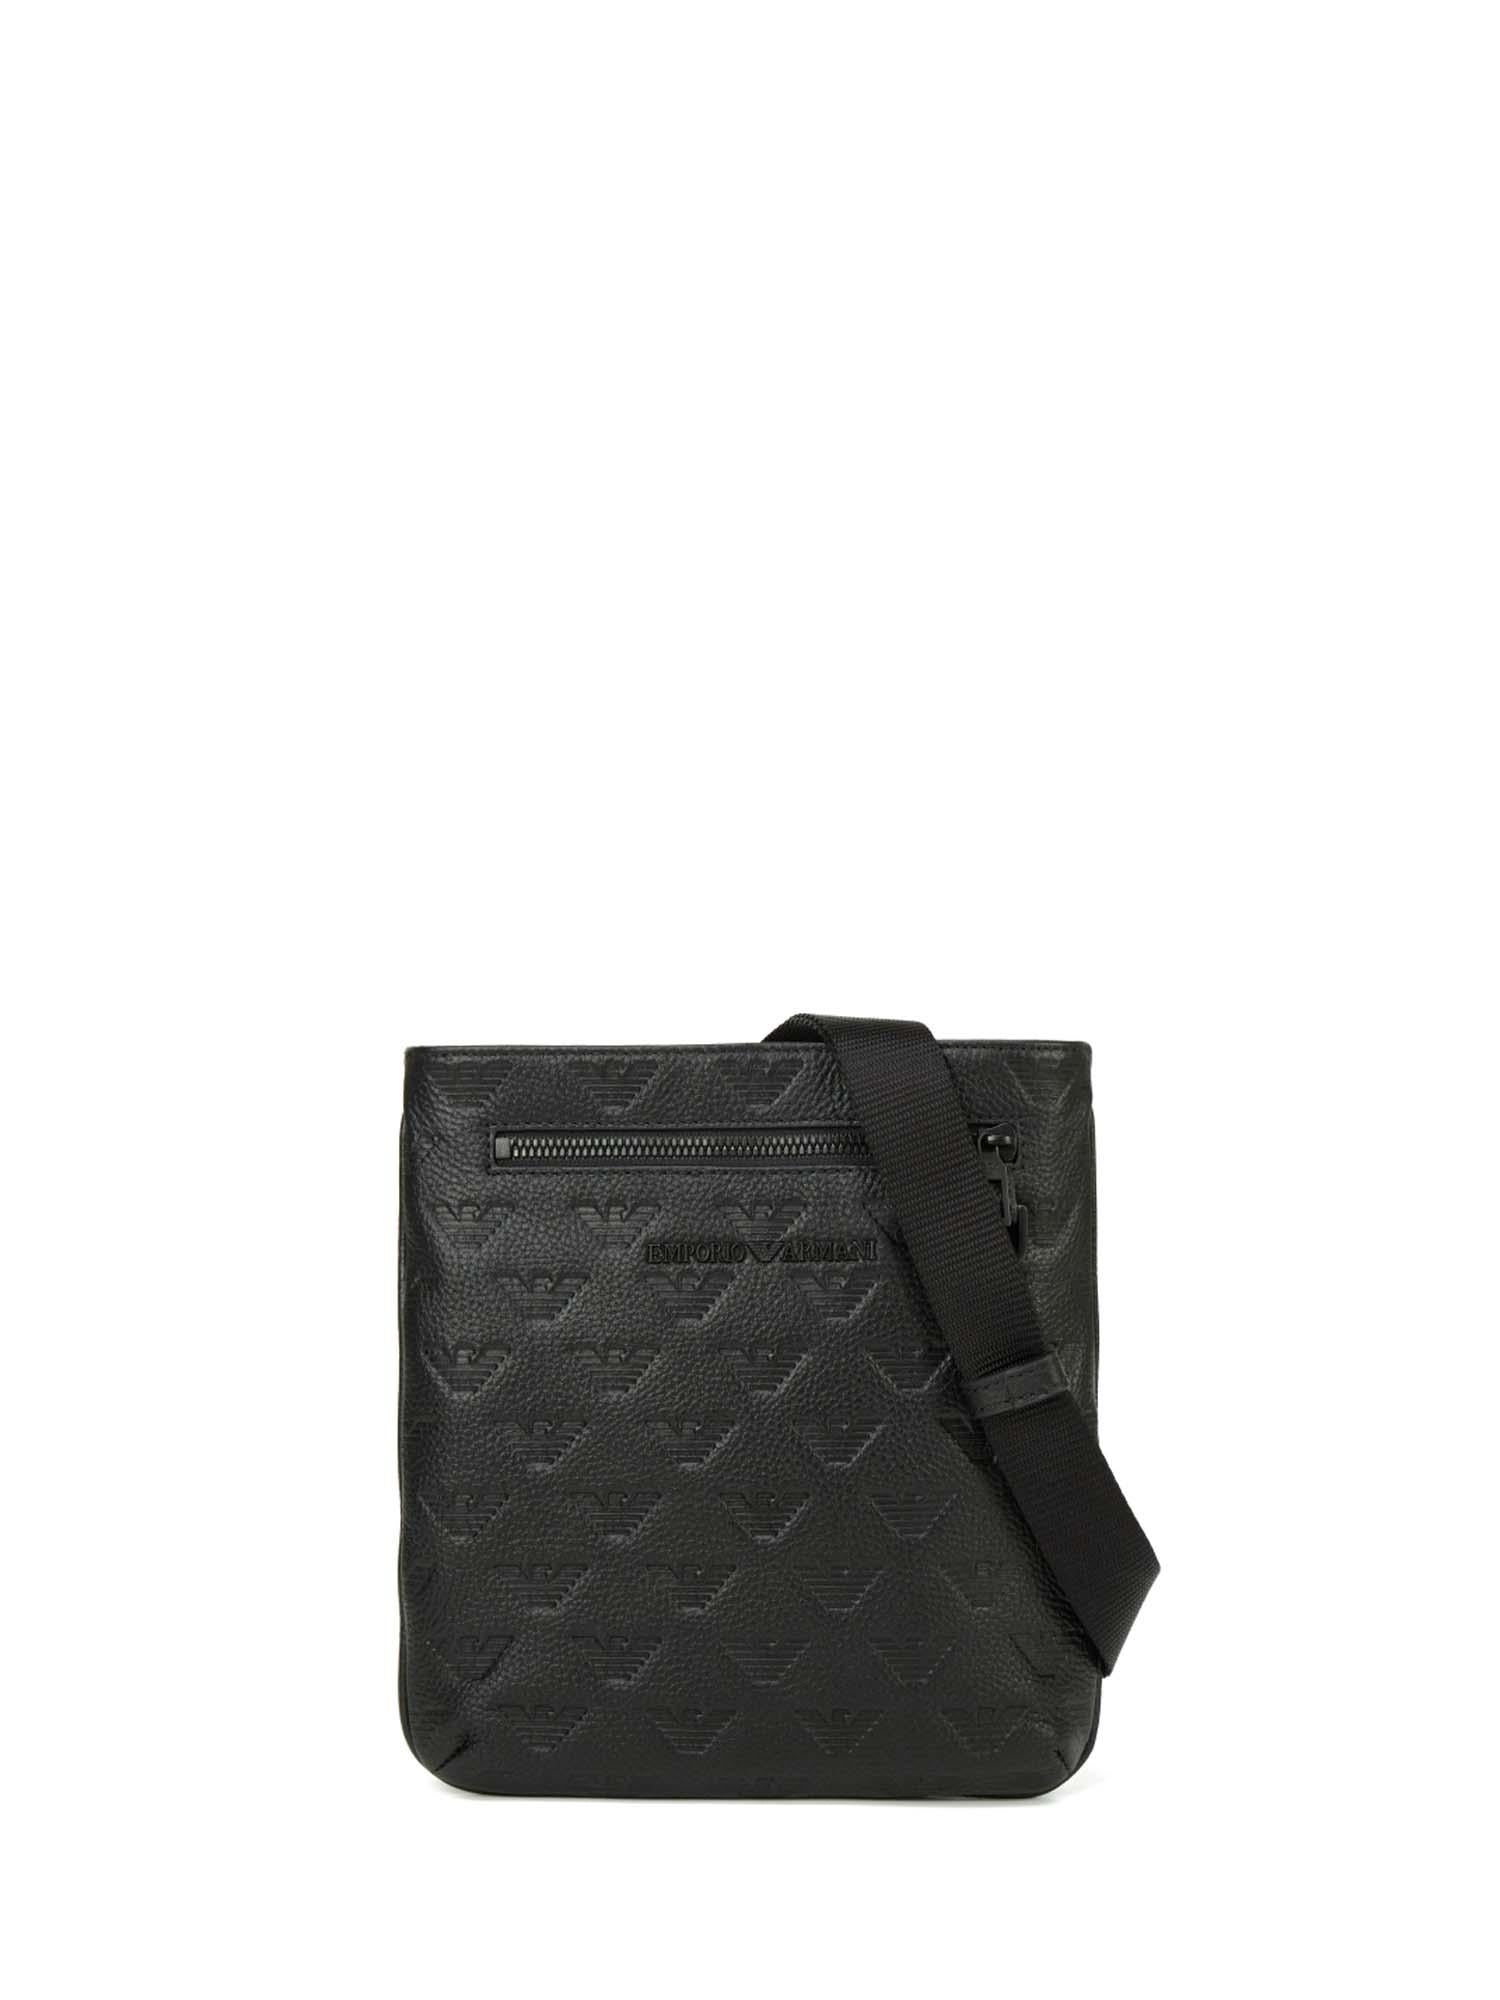 Women's Black Giorgio Armani Bags | Stylight